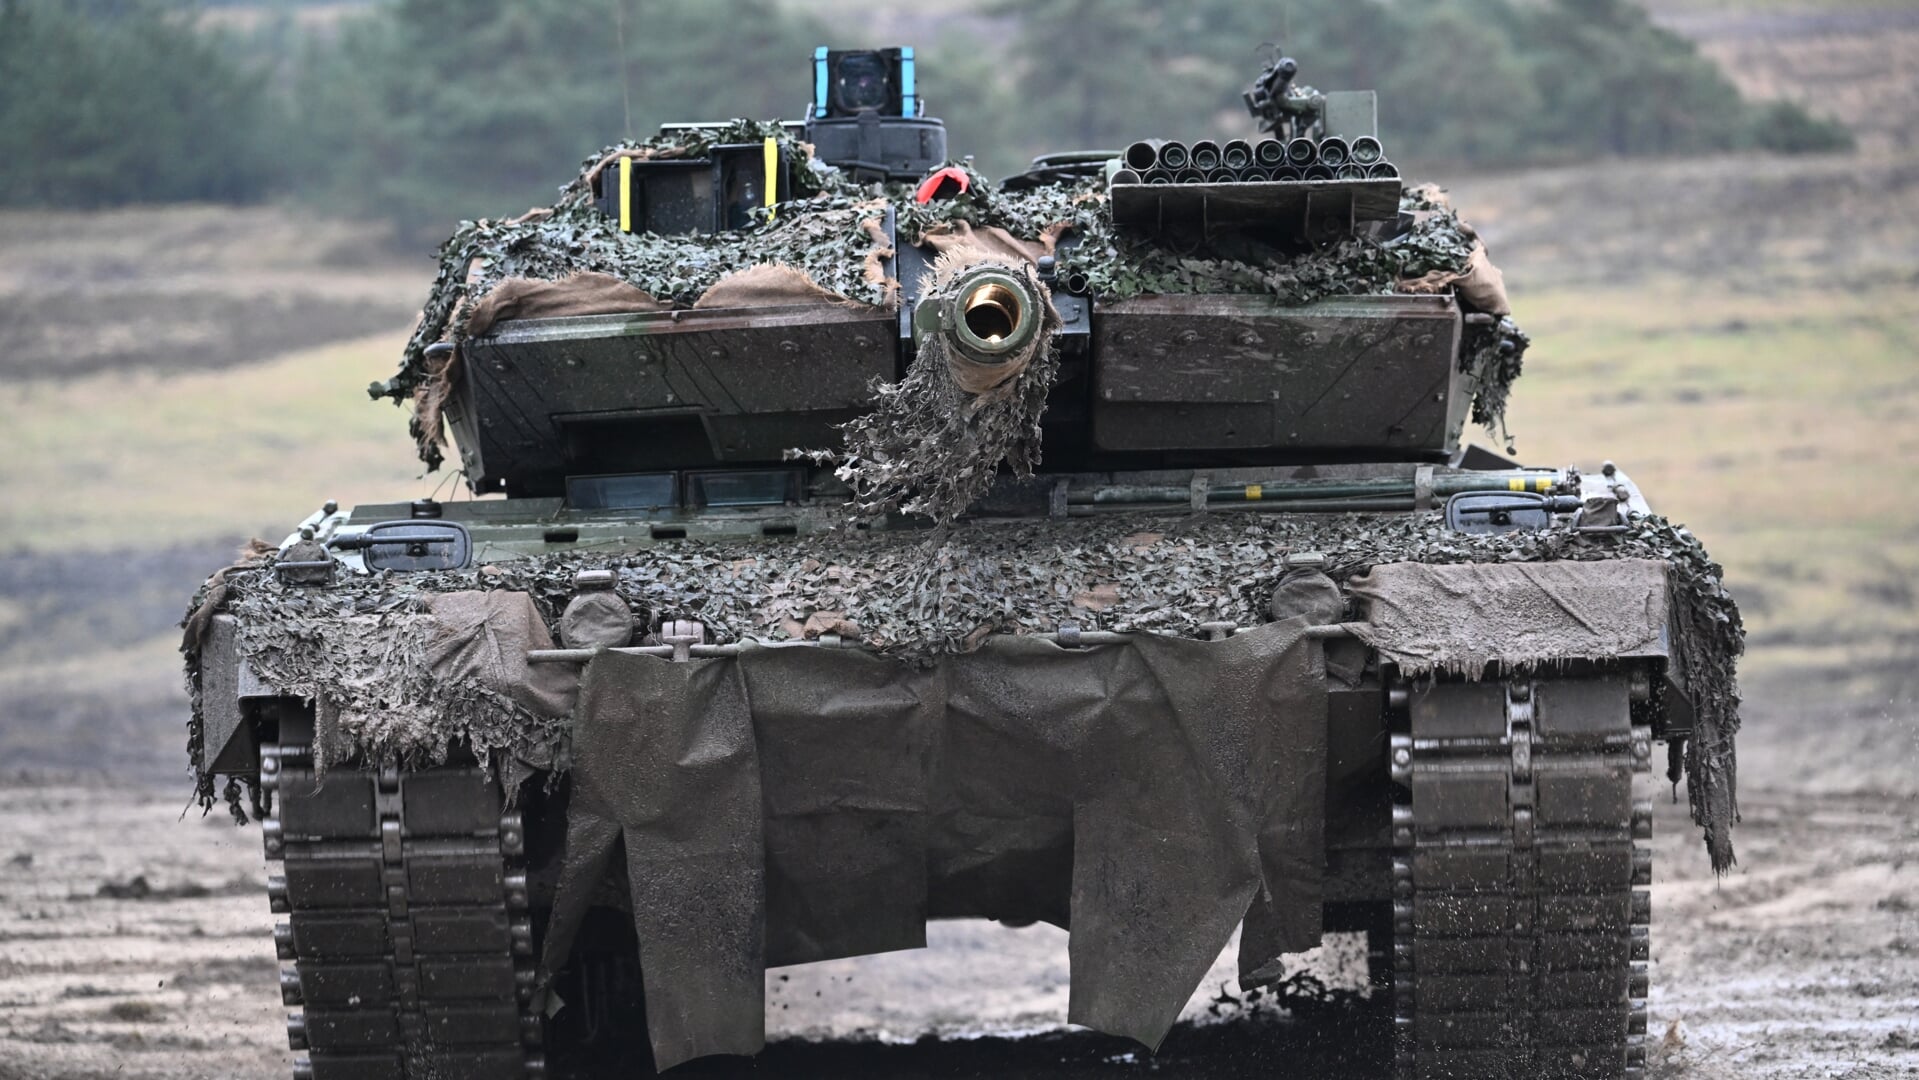 En af de nyeste versioner af den tyskproducerede Leopard kampvogn. Den ældre model et kan snart være på vej til brug for ukrainernes frihedskamp.